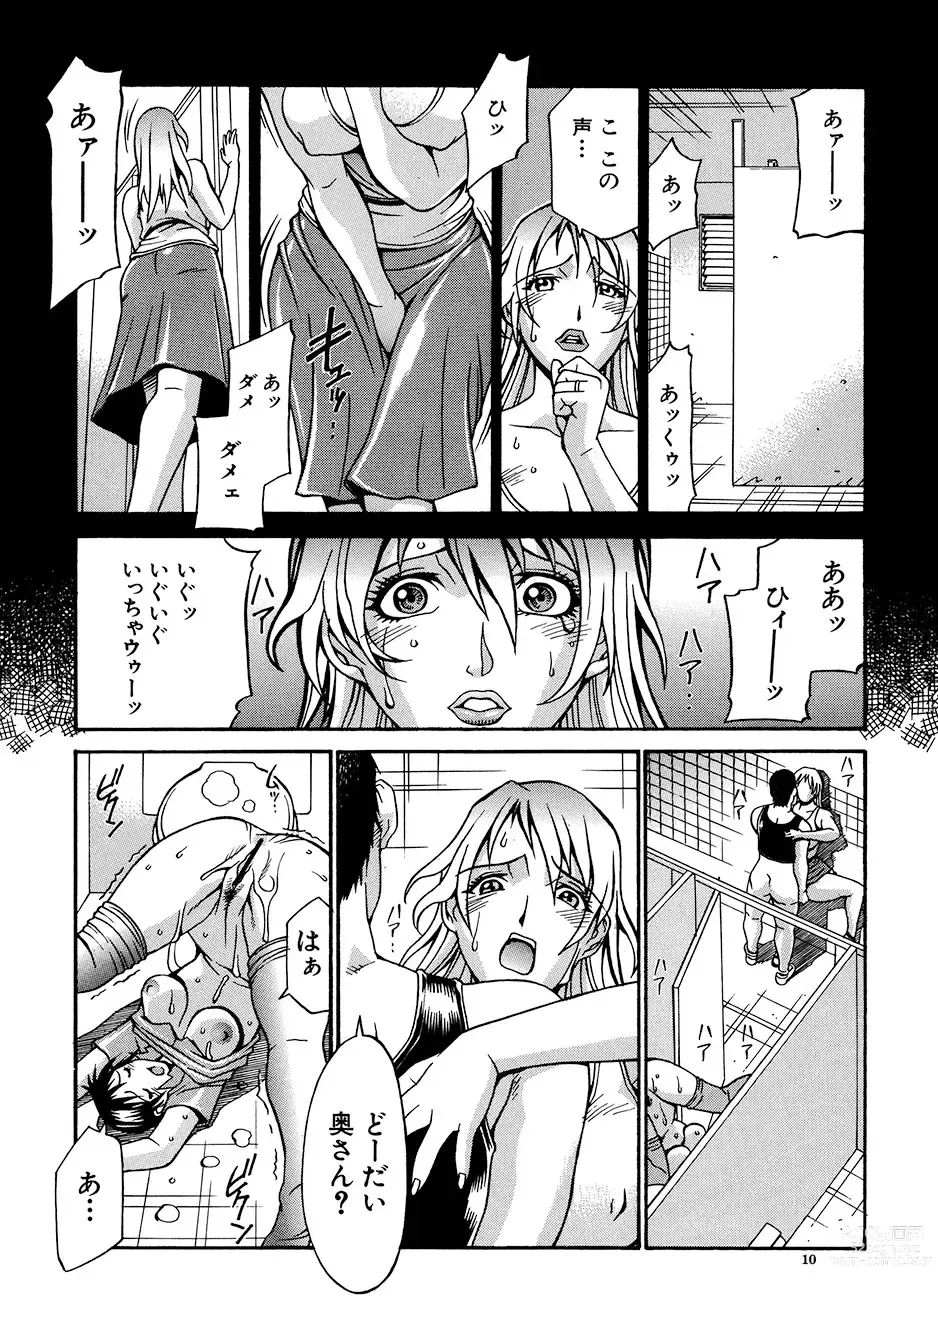 Page 9 of manga Mechiku